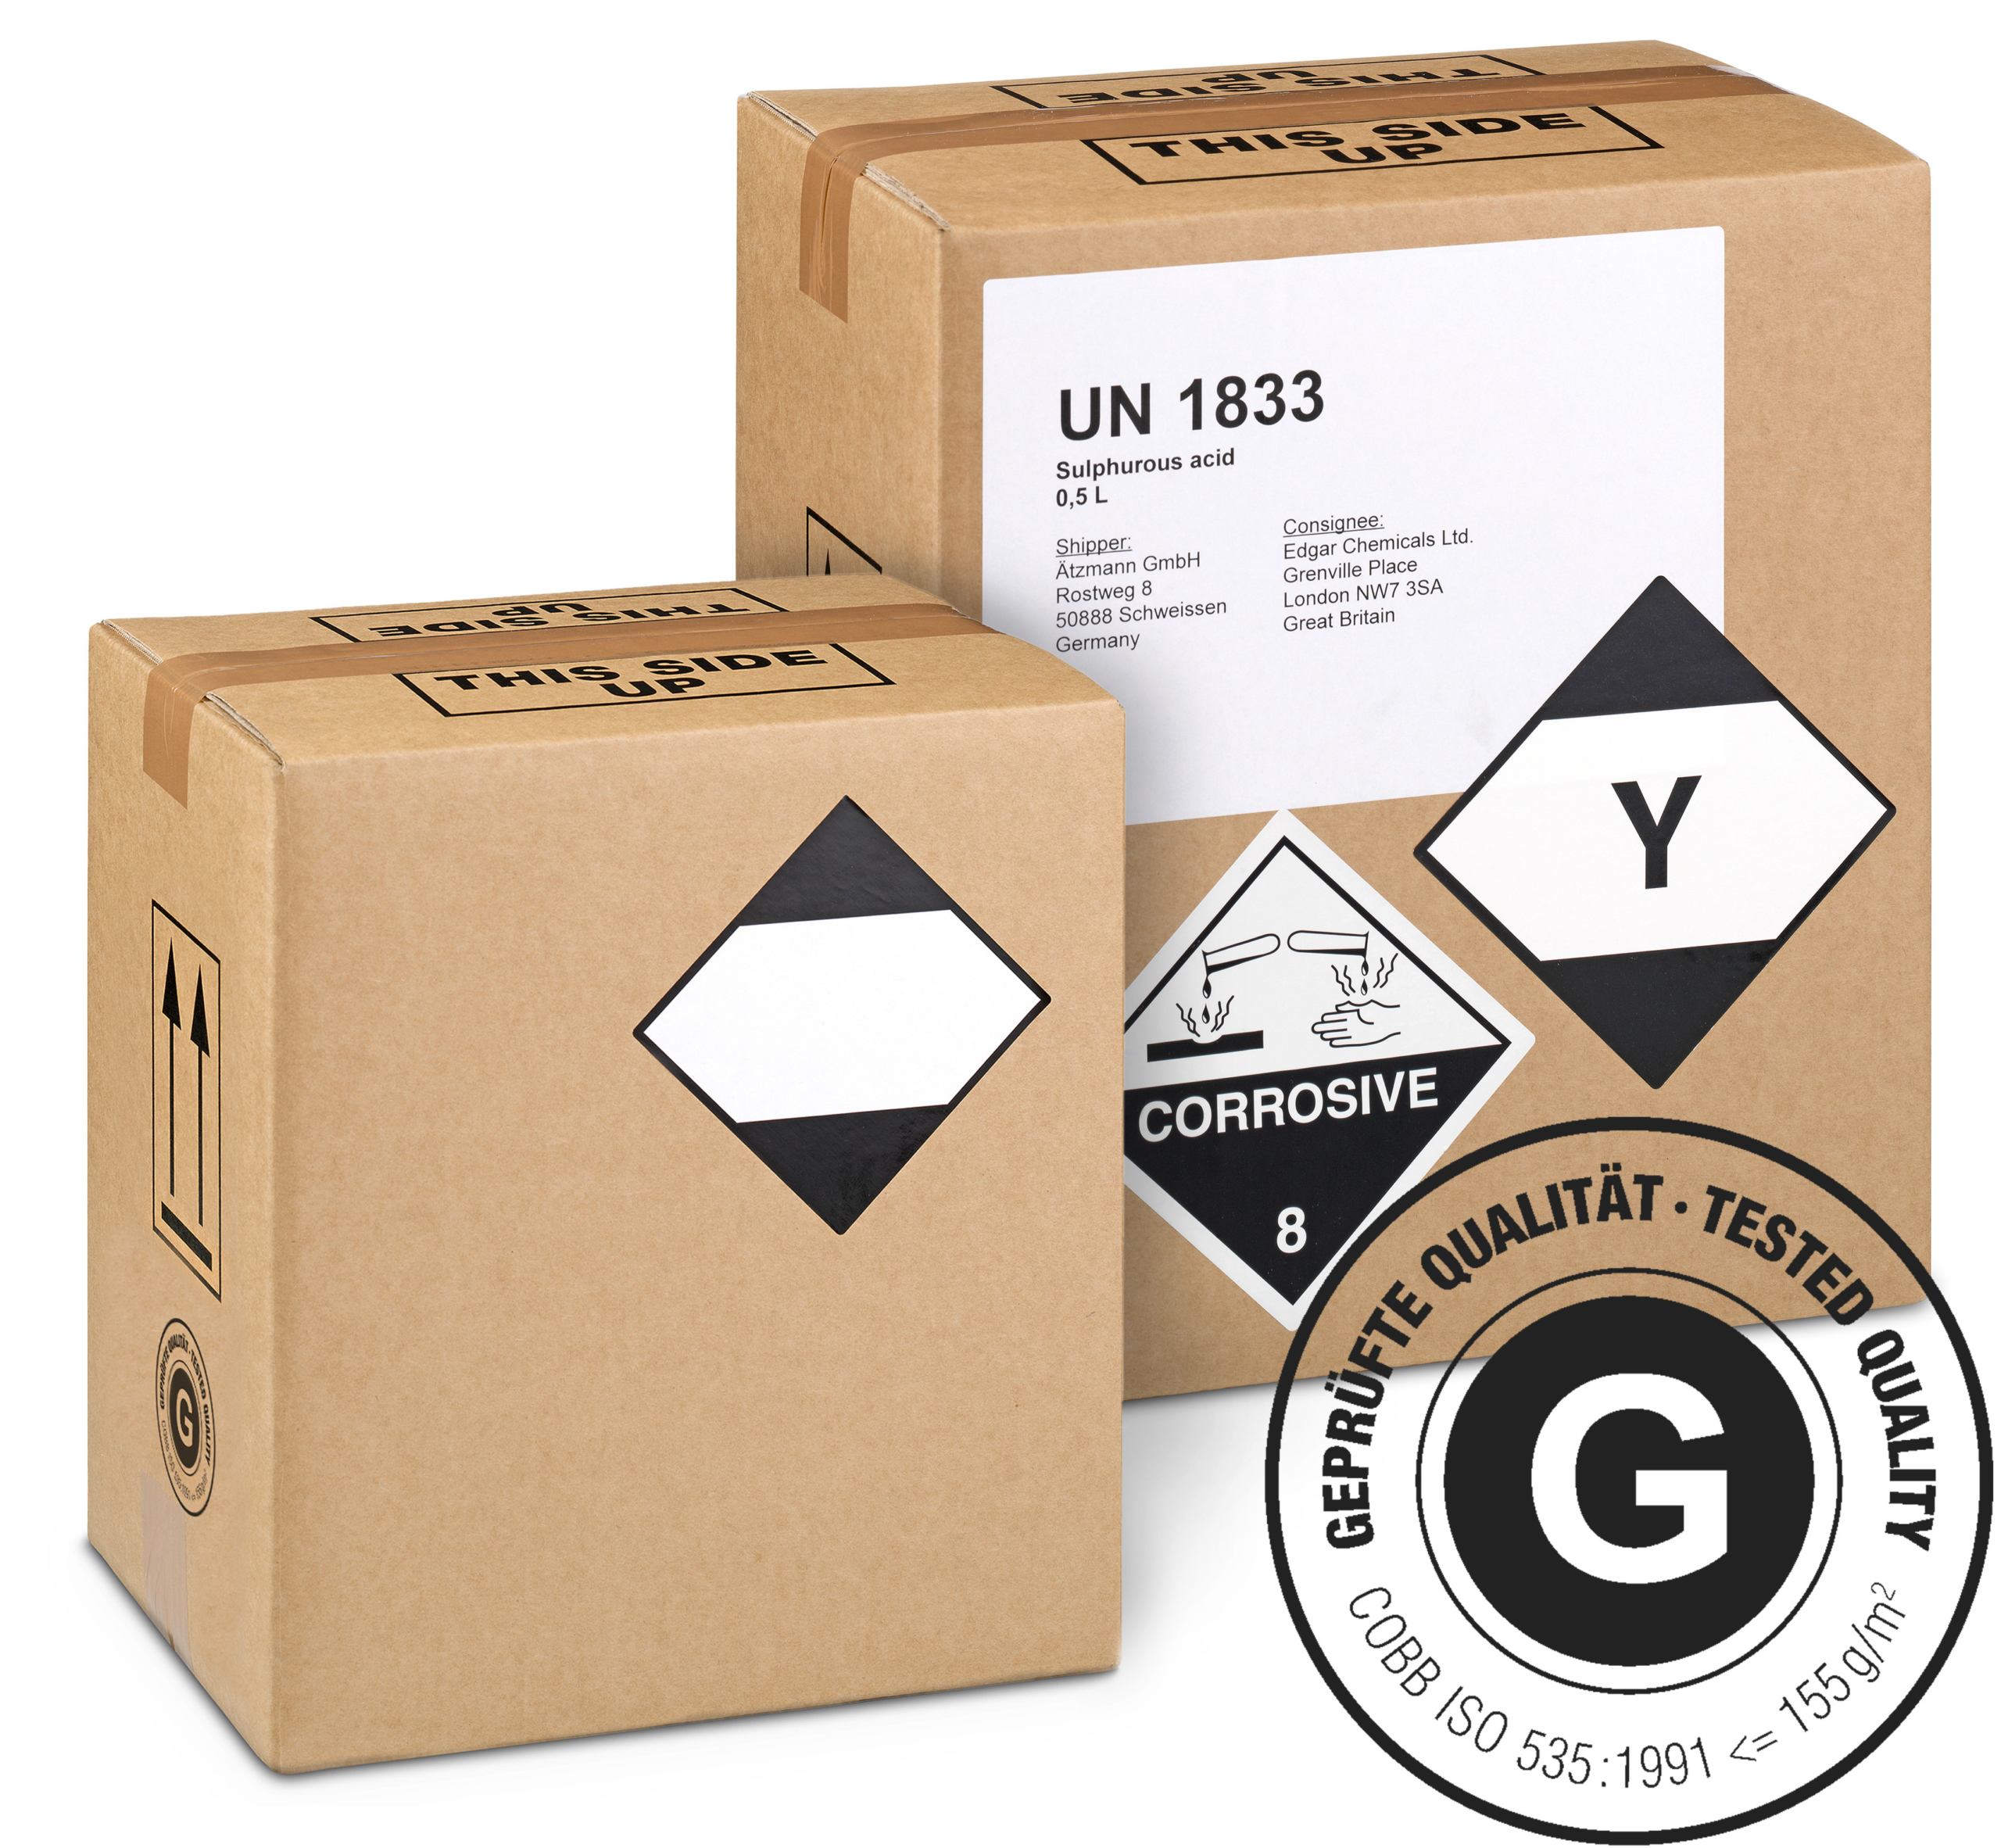 GBOX LQ Gefahrgutkarton – Geprüfte Gefahrgutverpackungen / Industrieverpackungen mit Gefahrgutetiketten. Jetzt im Onlineshop kaufen